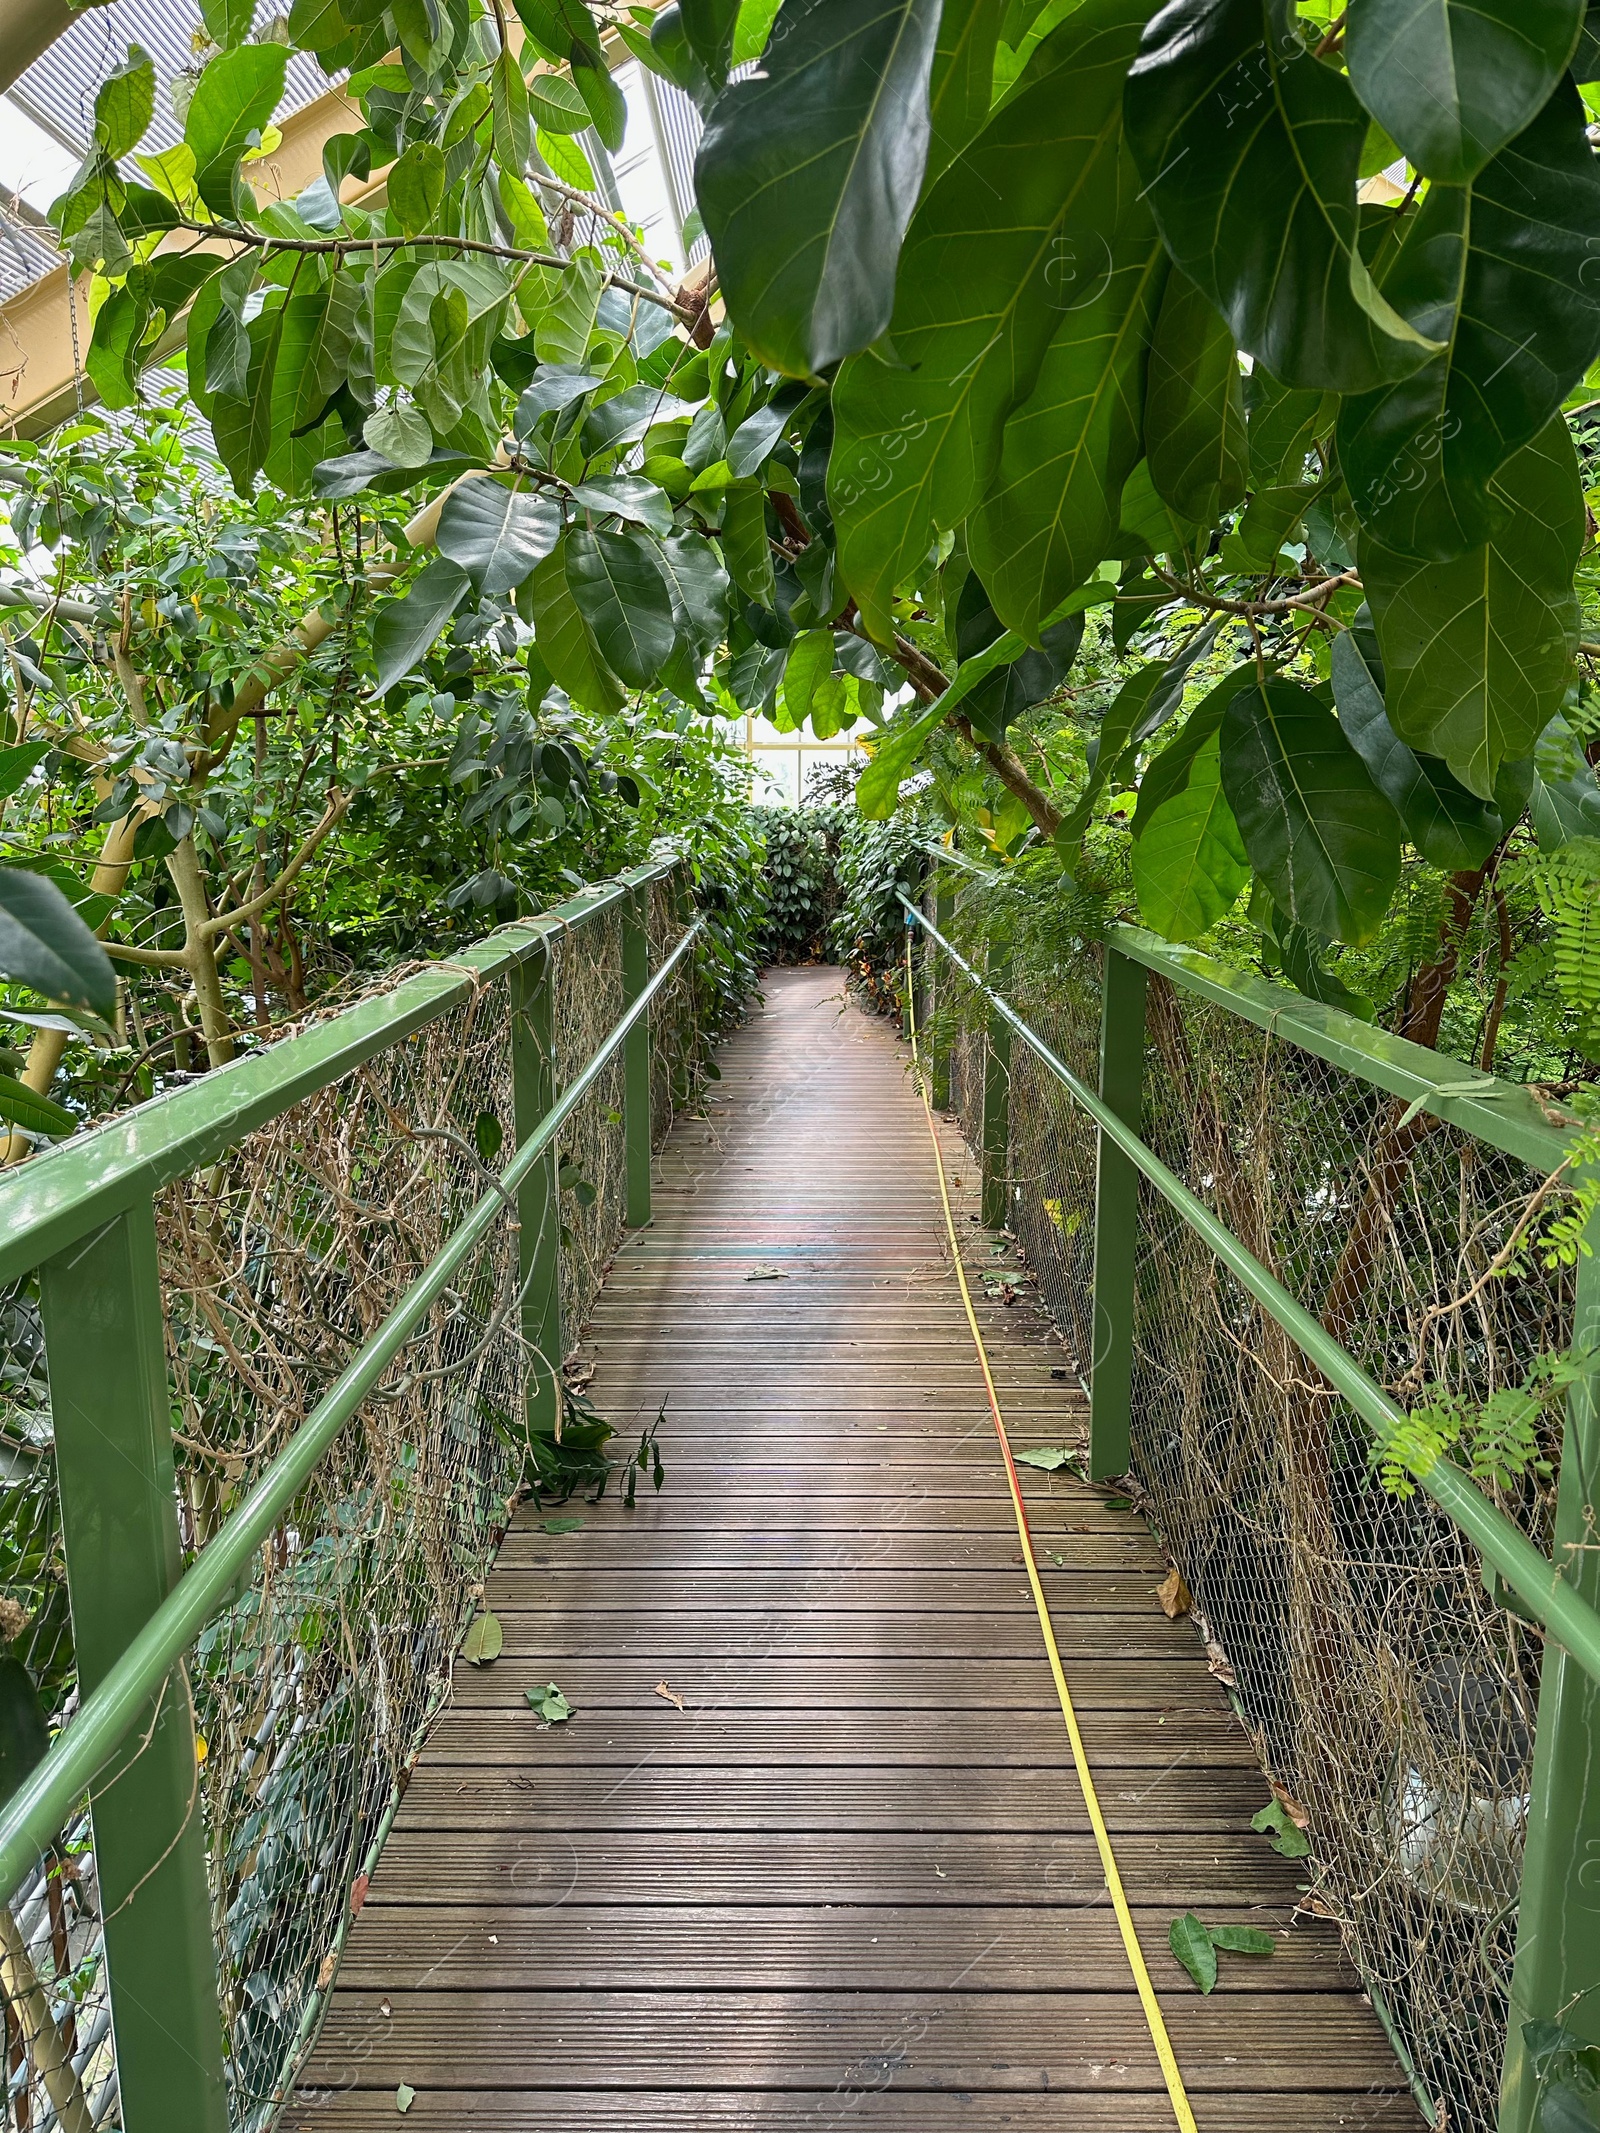 Photo of Bridge with railings among plants in botanic garden